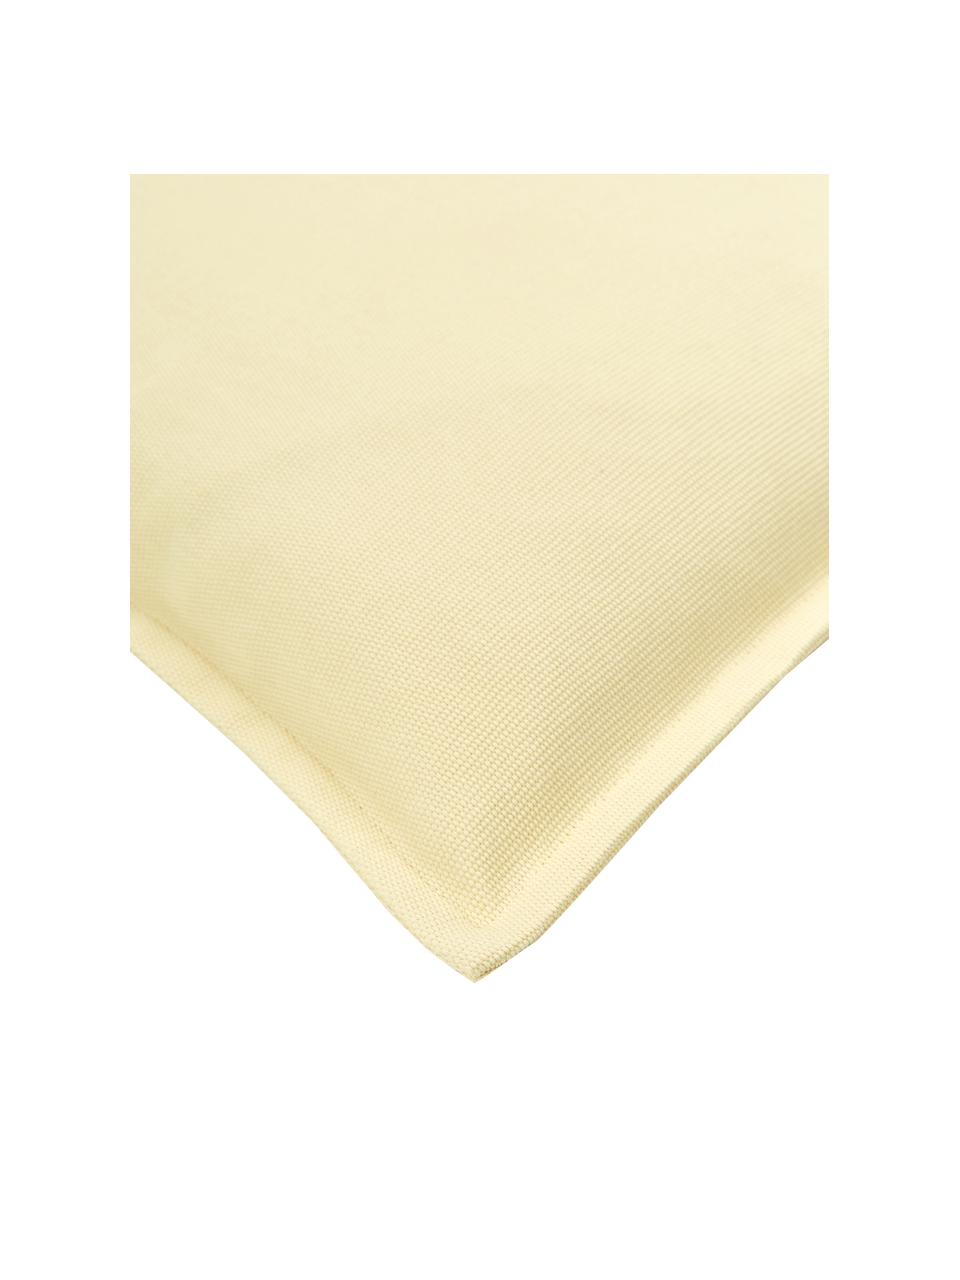 Housse de coussin en coton jaune clair Mads, 100 % coton, Jaune, larg. 40 x long. 40 cm